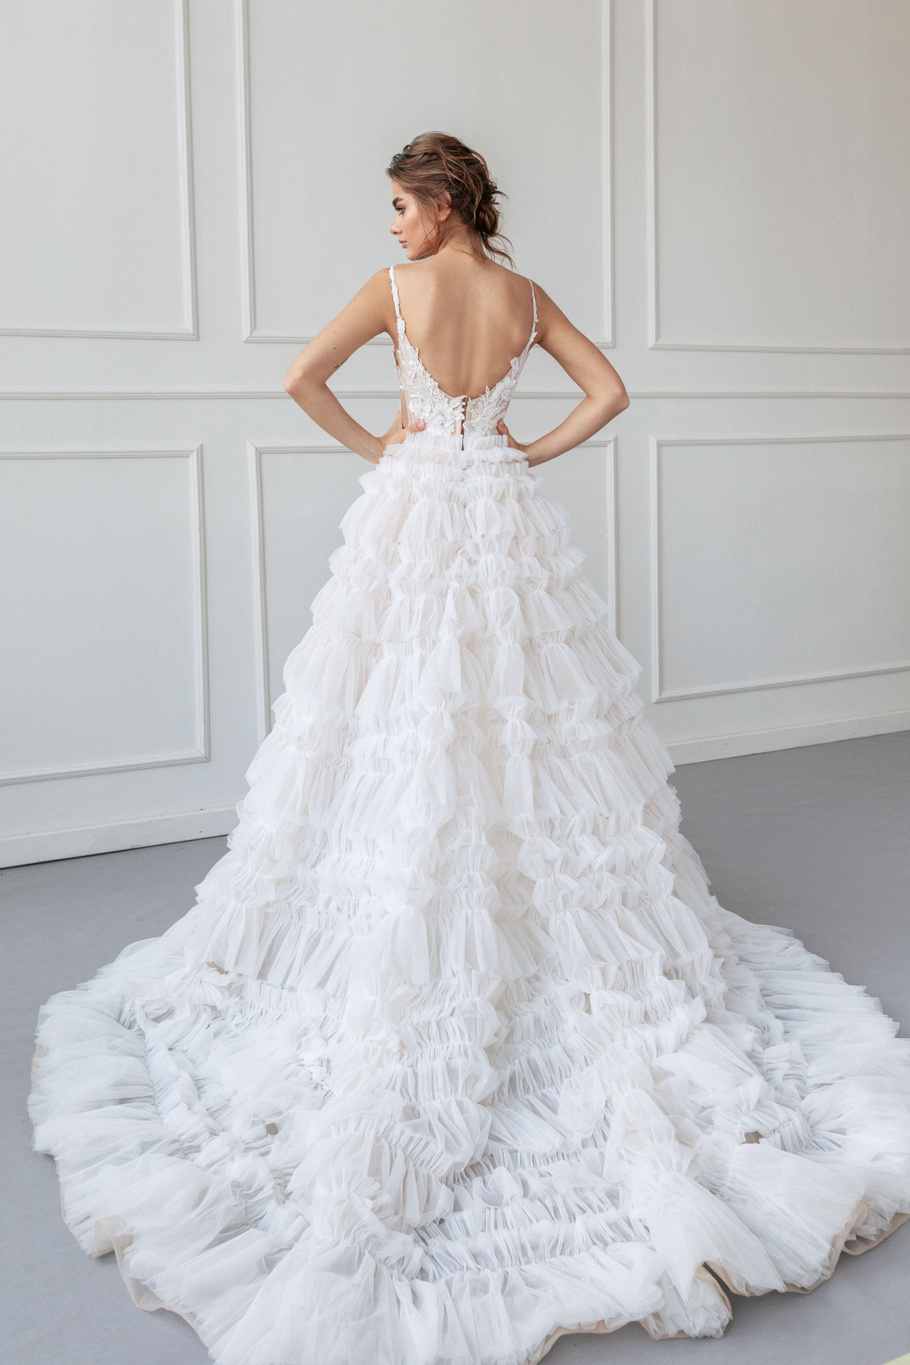 Купить свадебное платье «Катрин» Анже Этуаль из коллекции 2020 года в салоне «Мэри Трюфель»